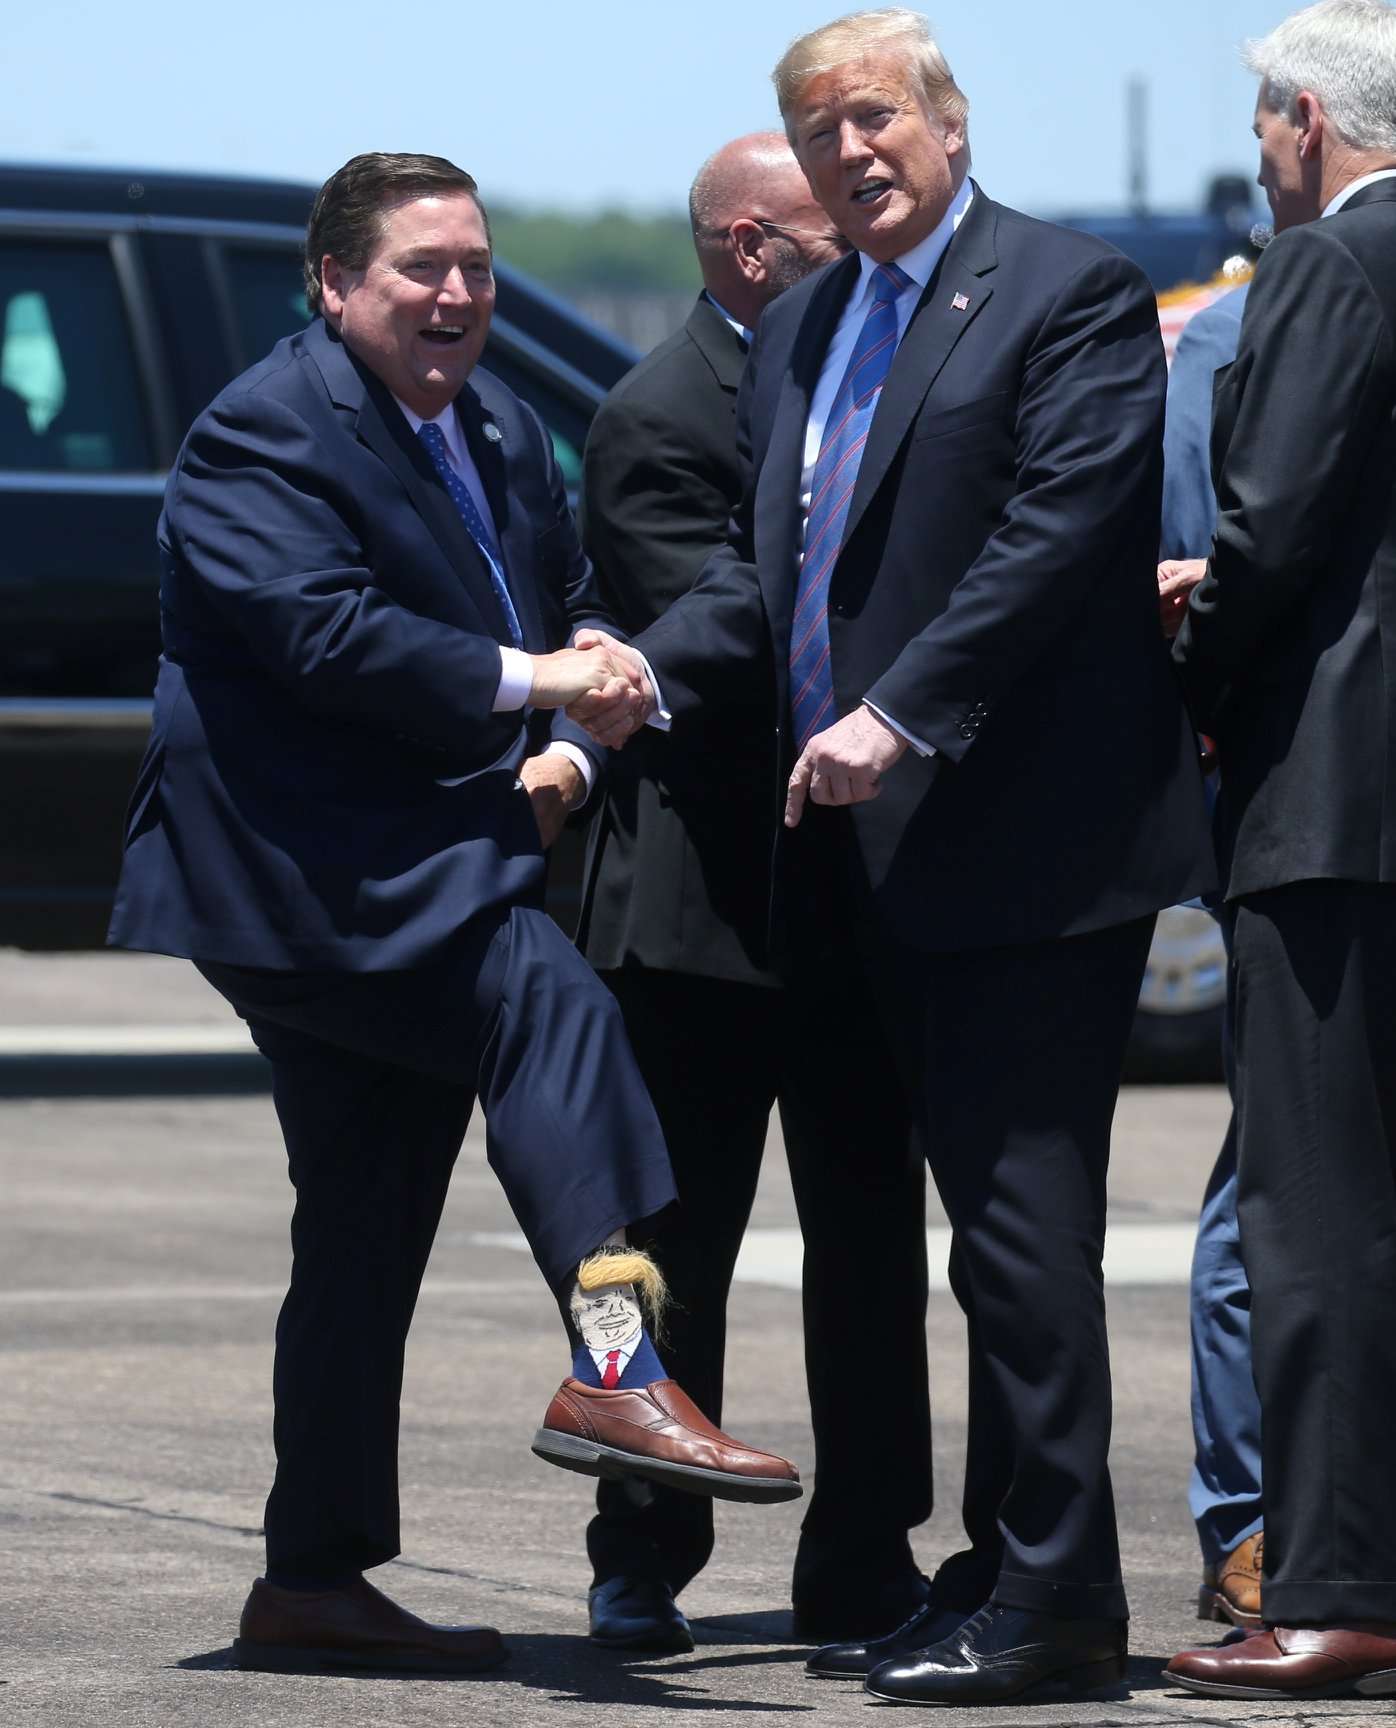 Чиновник встретил Трампа в милых носочках с его портретом: реакция президента бесценна - фото 433747